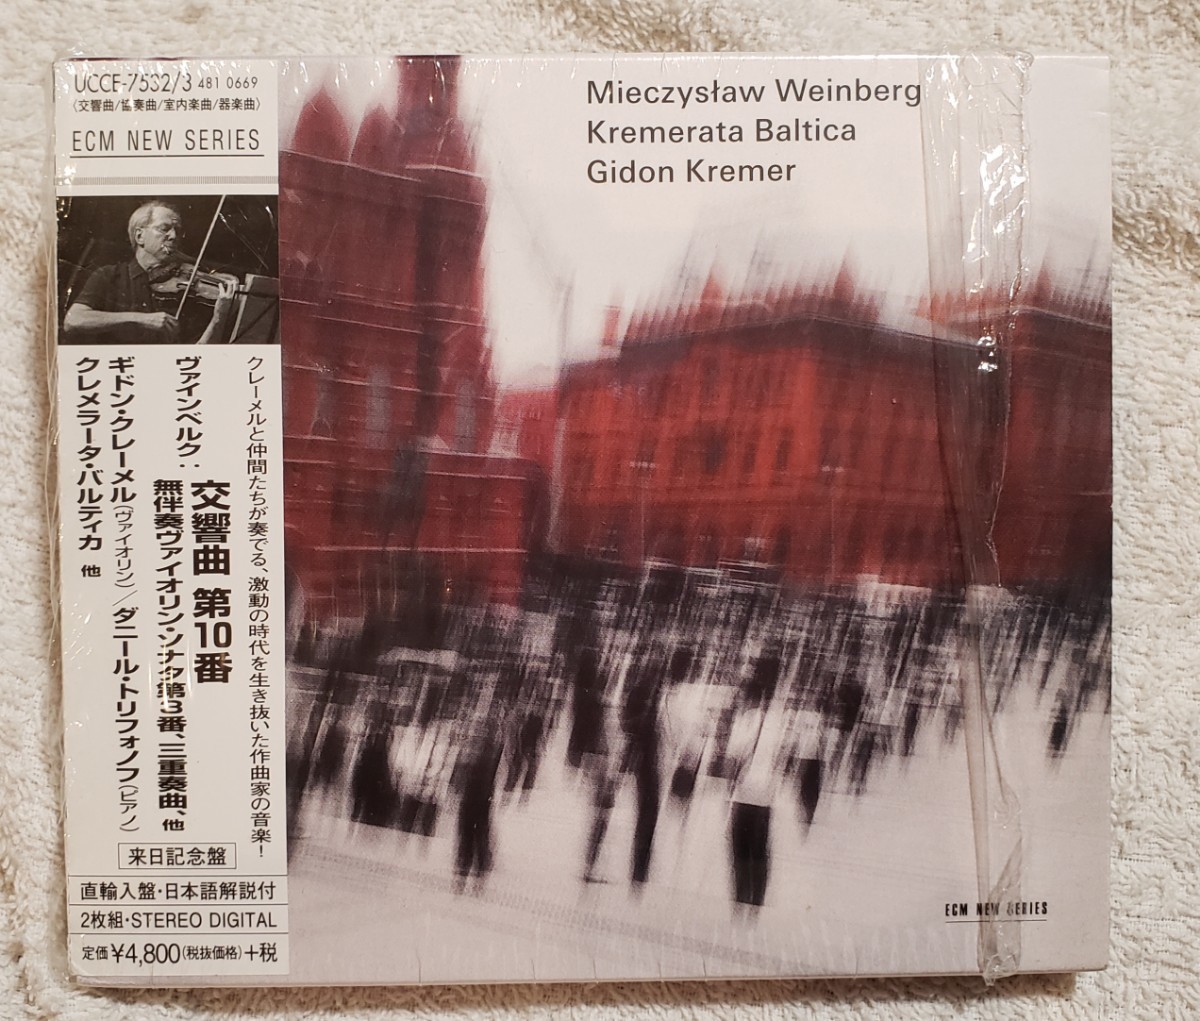 ヴァインベルク:交響曲 第10番 無伴奏ヴァイオリン・ソナタ第3番、三重奏曲、他 ギドン・クレメール　UCCE-7532/3_画像1